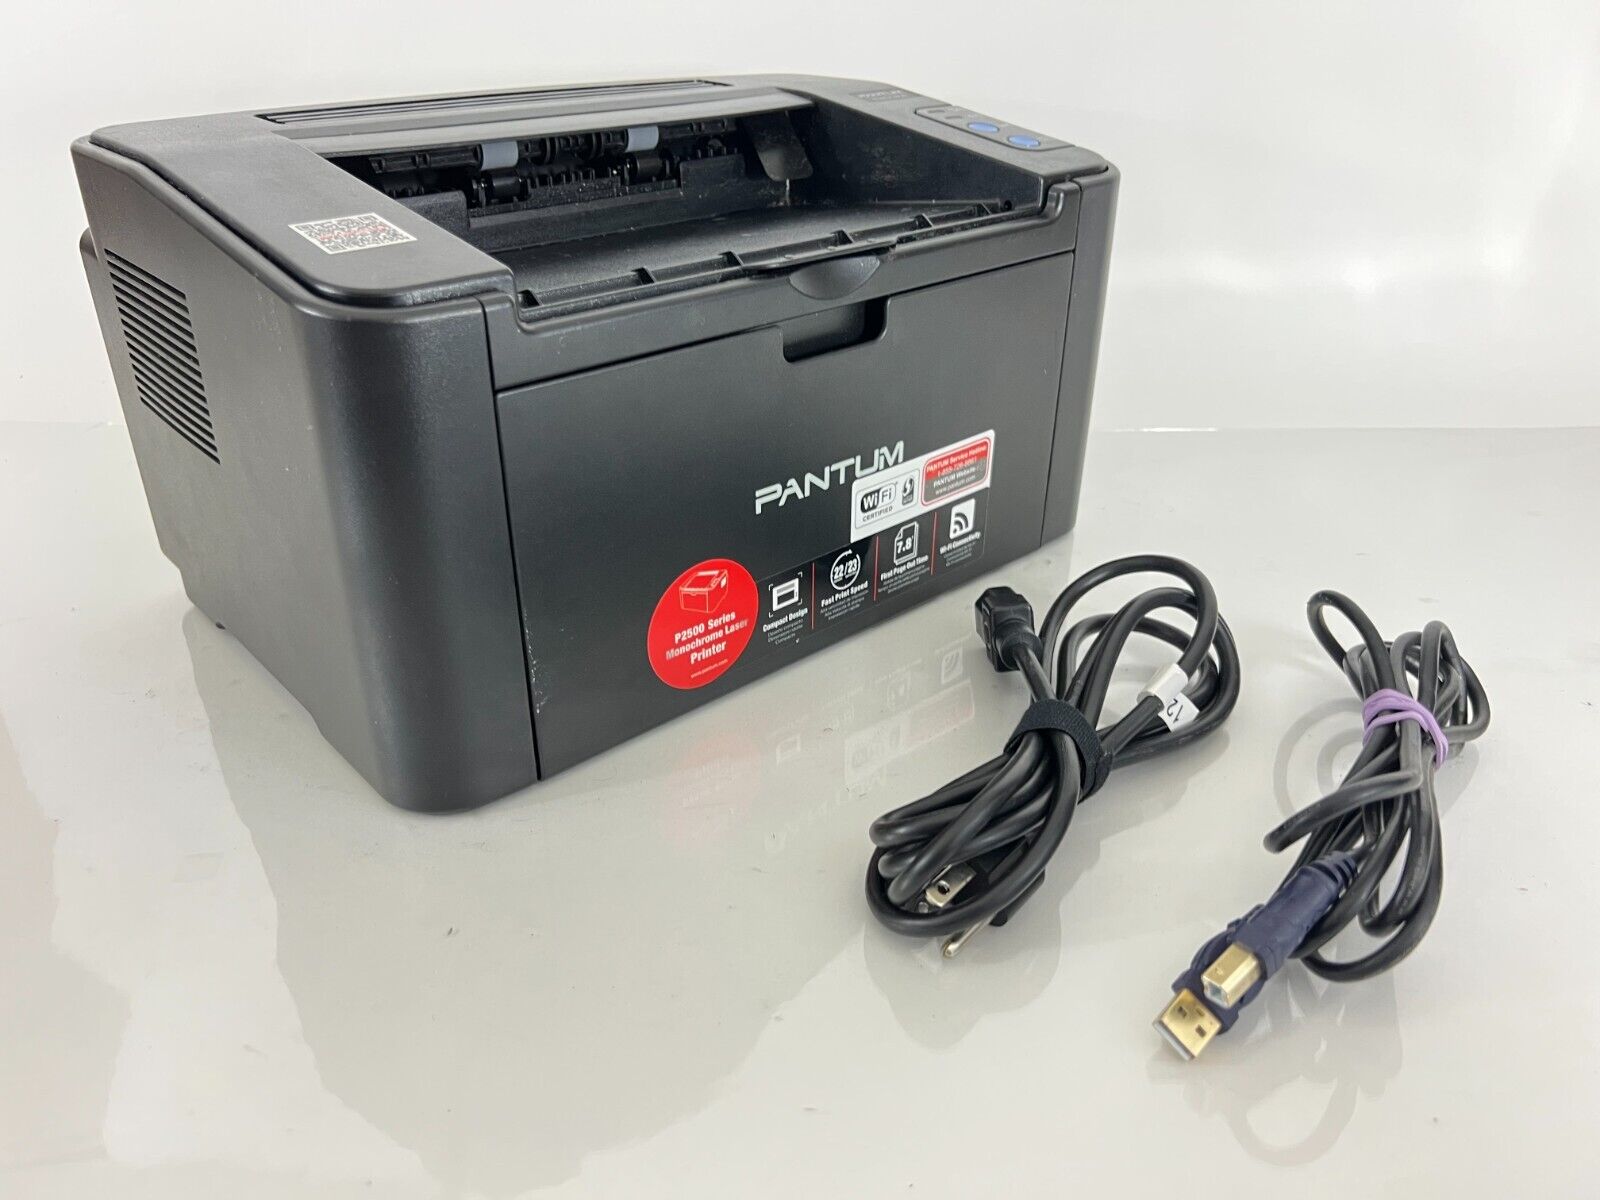 Pantum P2502W Wireless Compact Monochrome Laser Printer WiFi Black